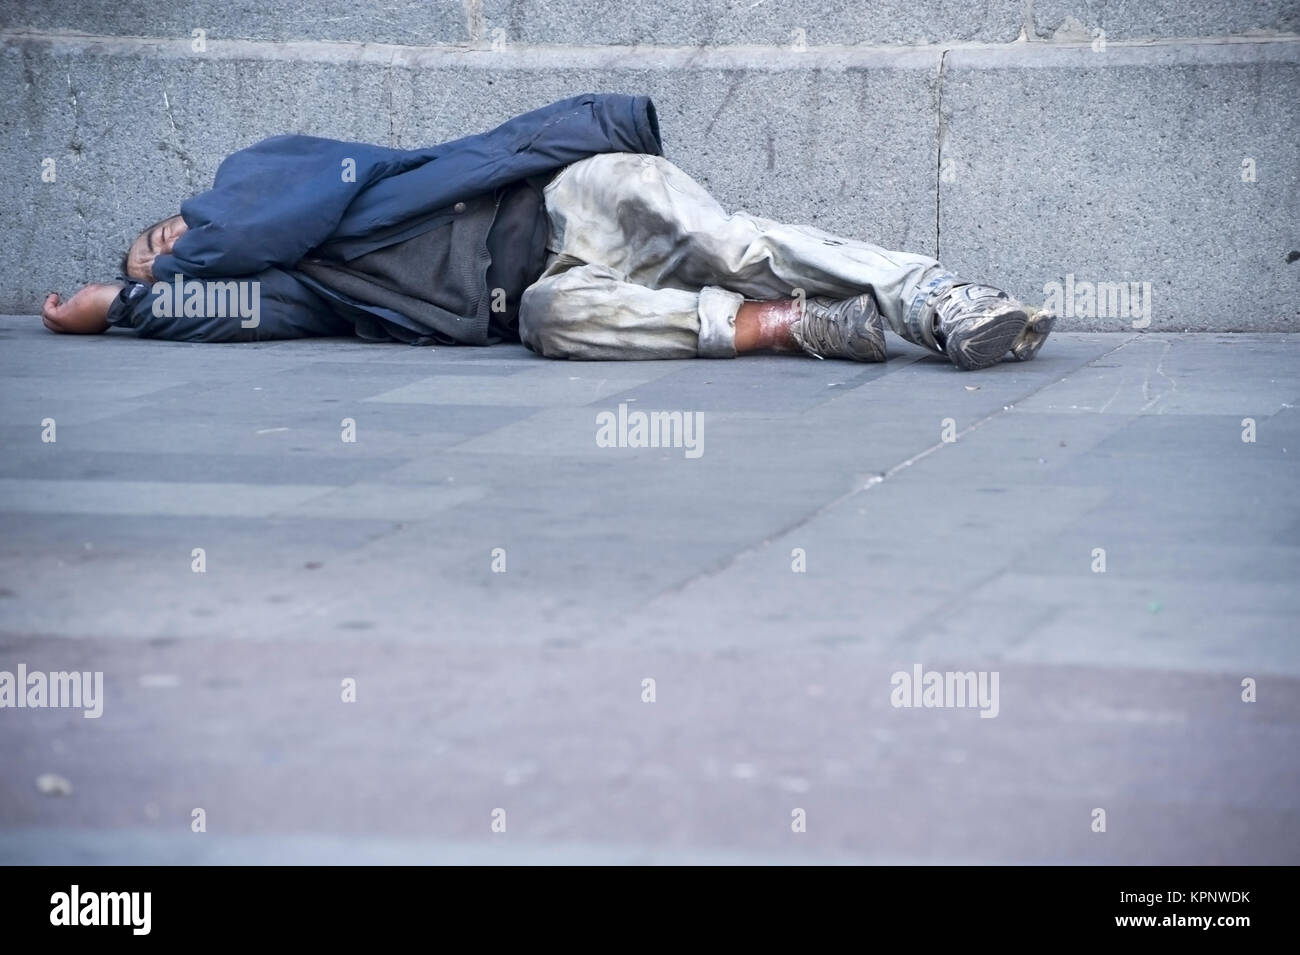 Obdachloser liegt am Gehsteig - street person Stock Photo